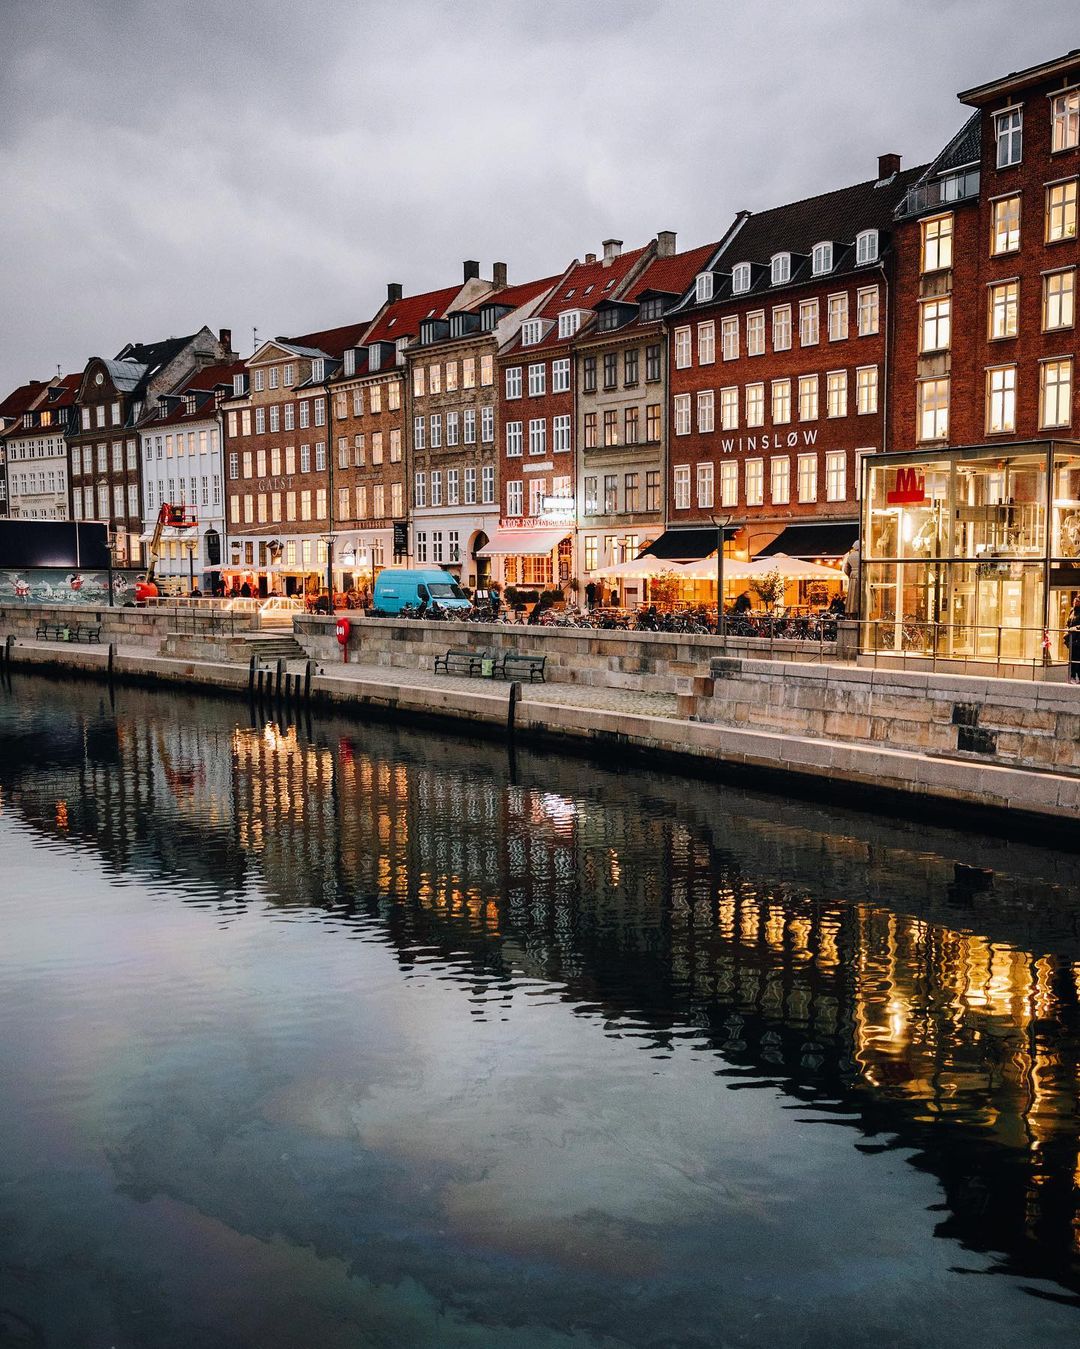 Знакомьтесь, наша прекрасная планета! Даниэль, образом, Читать, подписчиков, более, Instagram, делится, работами, Своими, lifestyleфотографии, путешествиях, пейзажах, главным, Овербек, фокусируется, Дания, Копенгагене, проживающий, время, настоящее